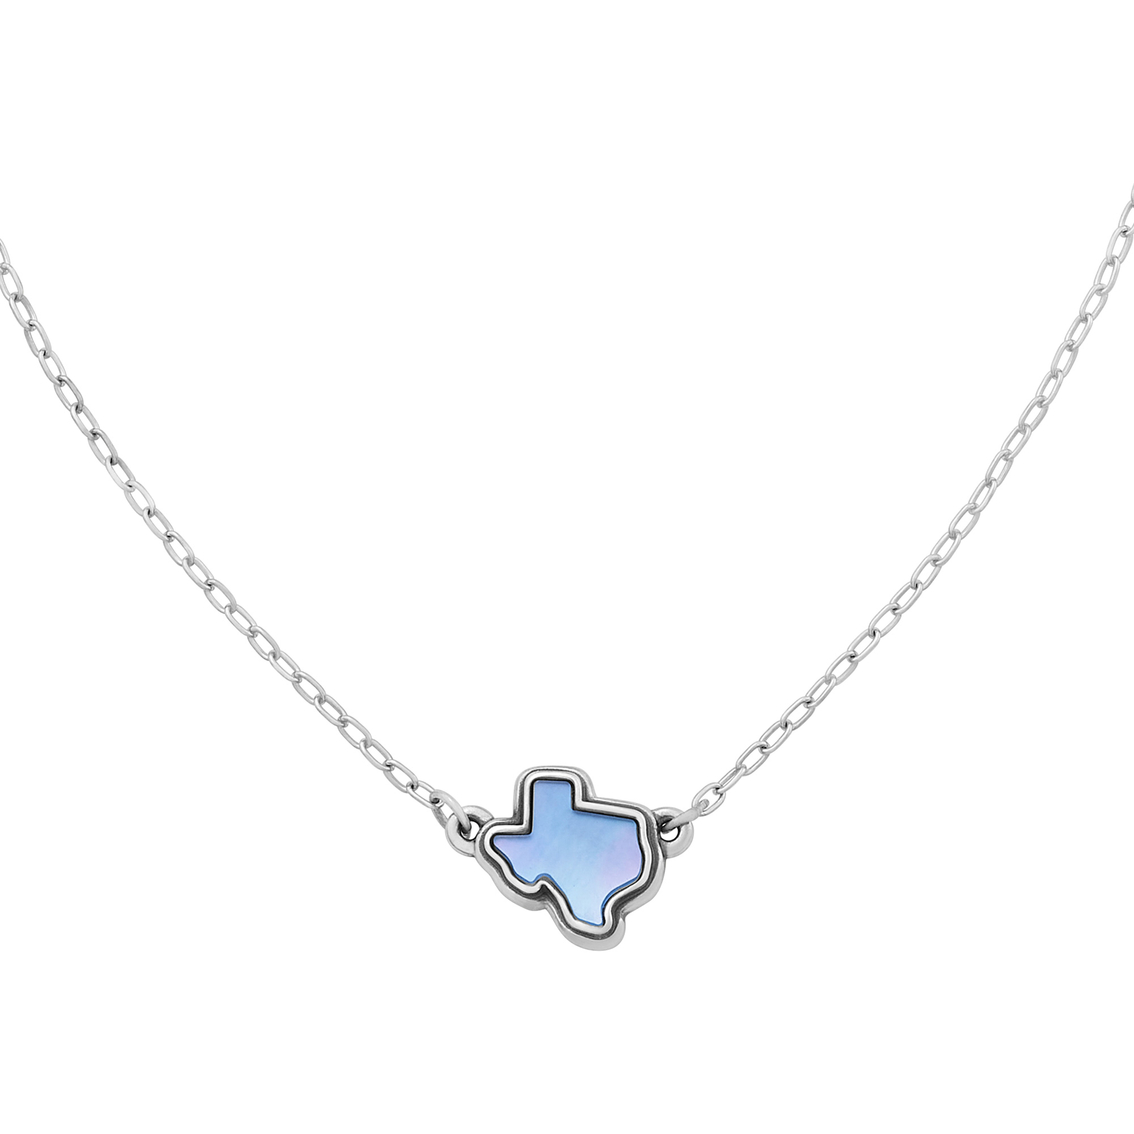 James Avery Texas Layered Gemstone Necklace - Image 2 of 2